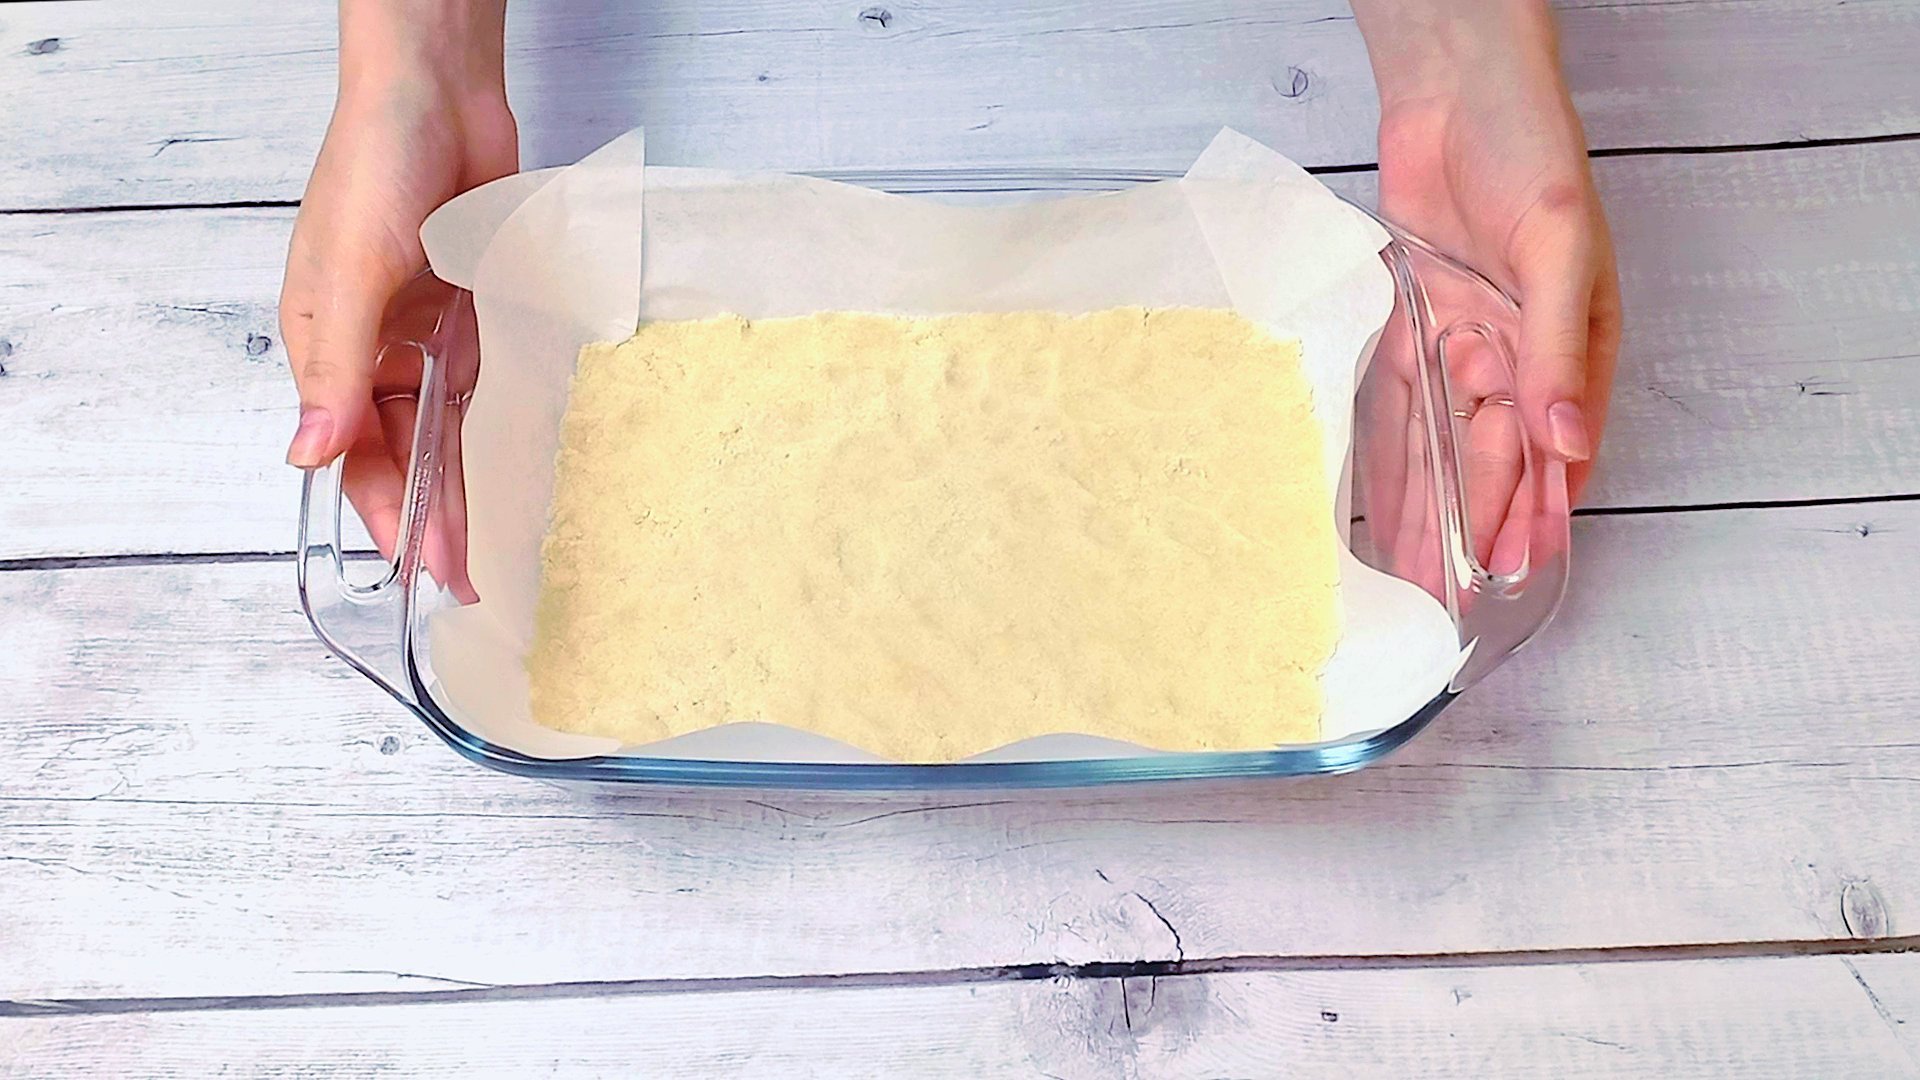 Чем можно смазать тесто. Пергаментная бумага для выпечки. Надо ли смазывать пергаментную бумагу маслом перед выпечкой. Смазывают ли пергаментную бумагу перед выпечкой маслом. Надо ли смазывать бумагу для выпечки маслом.